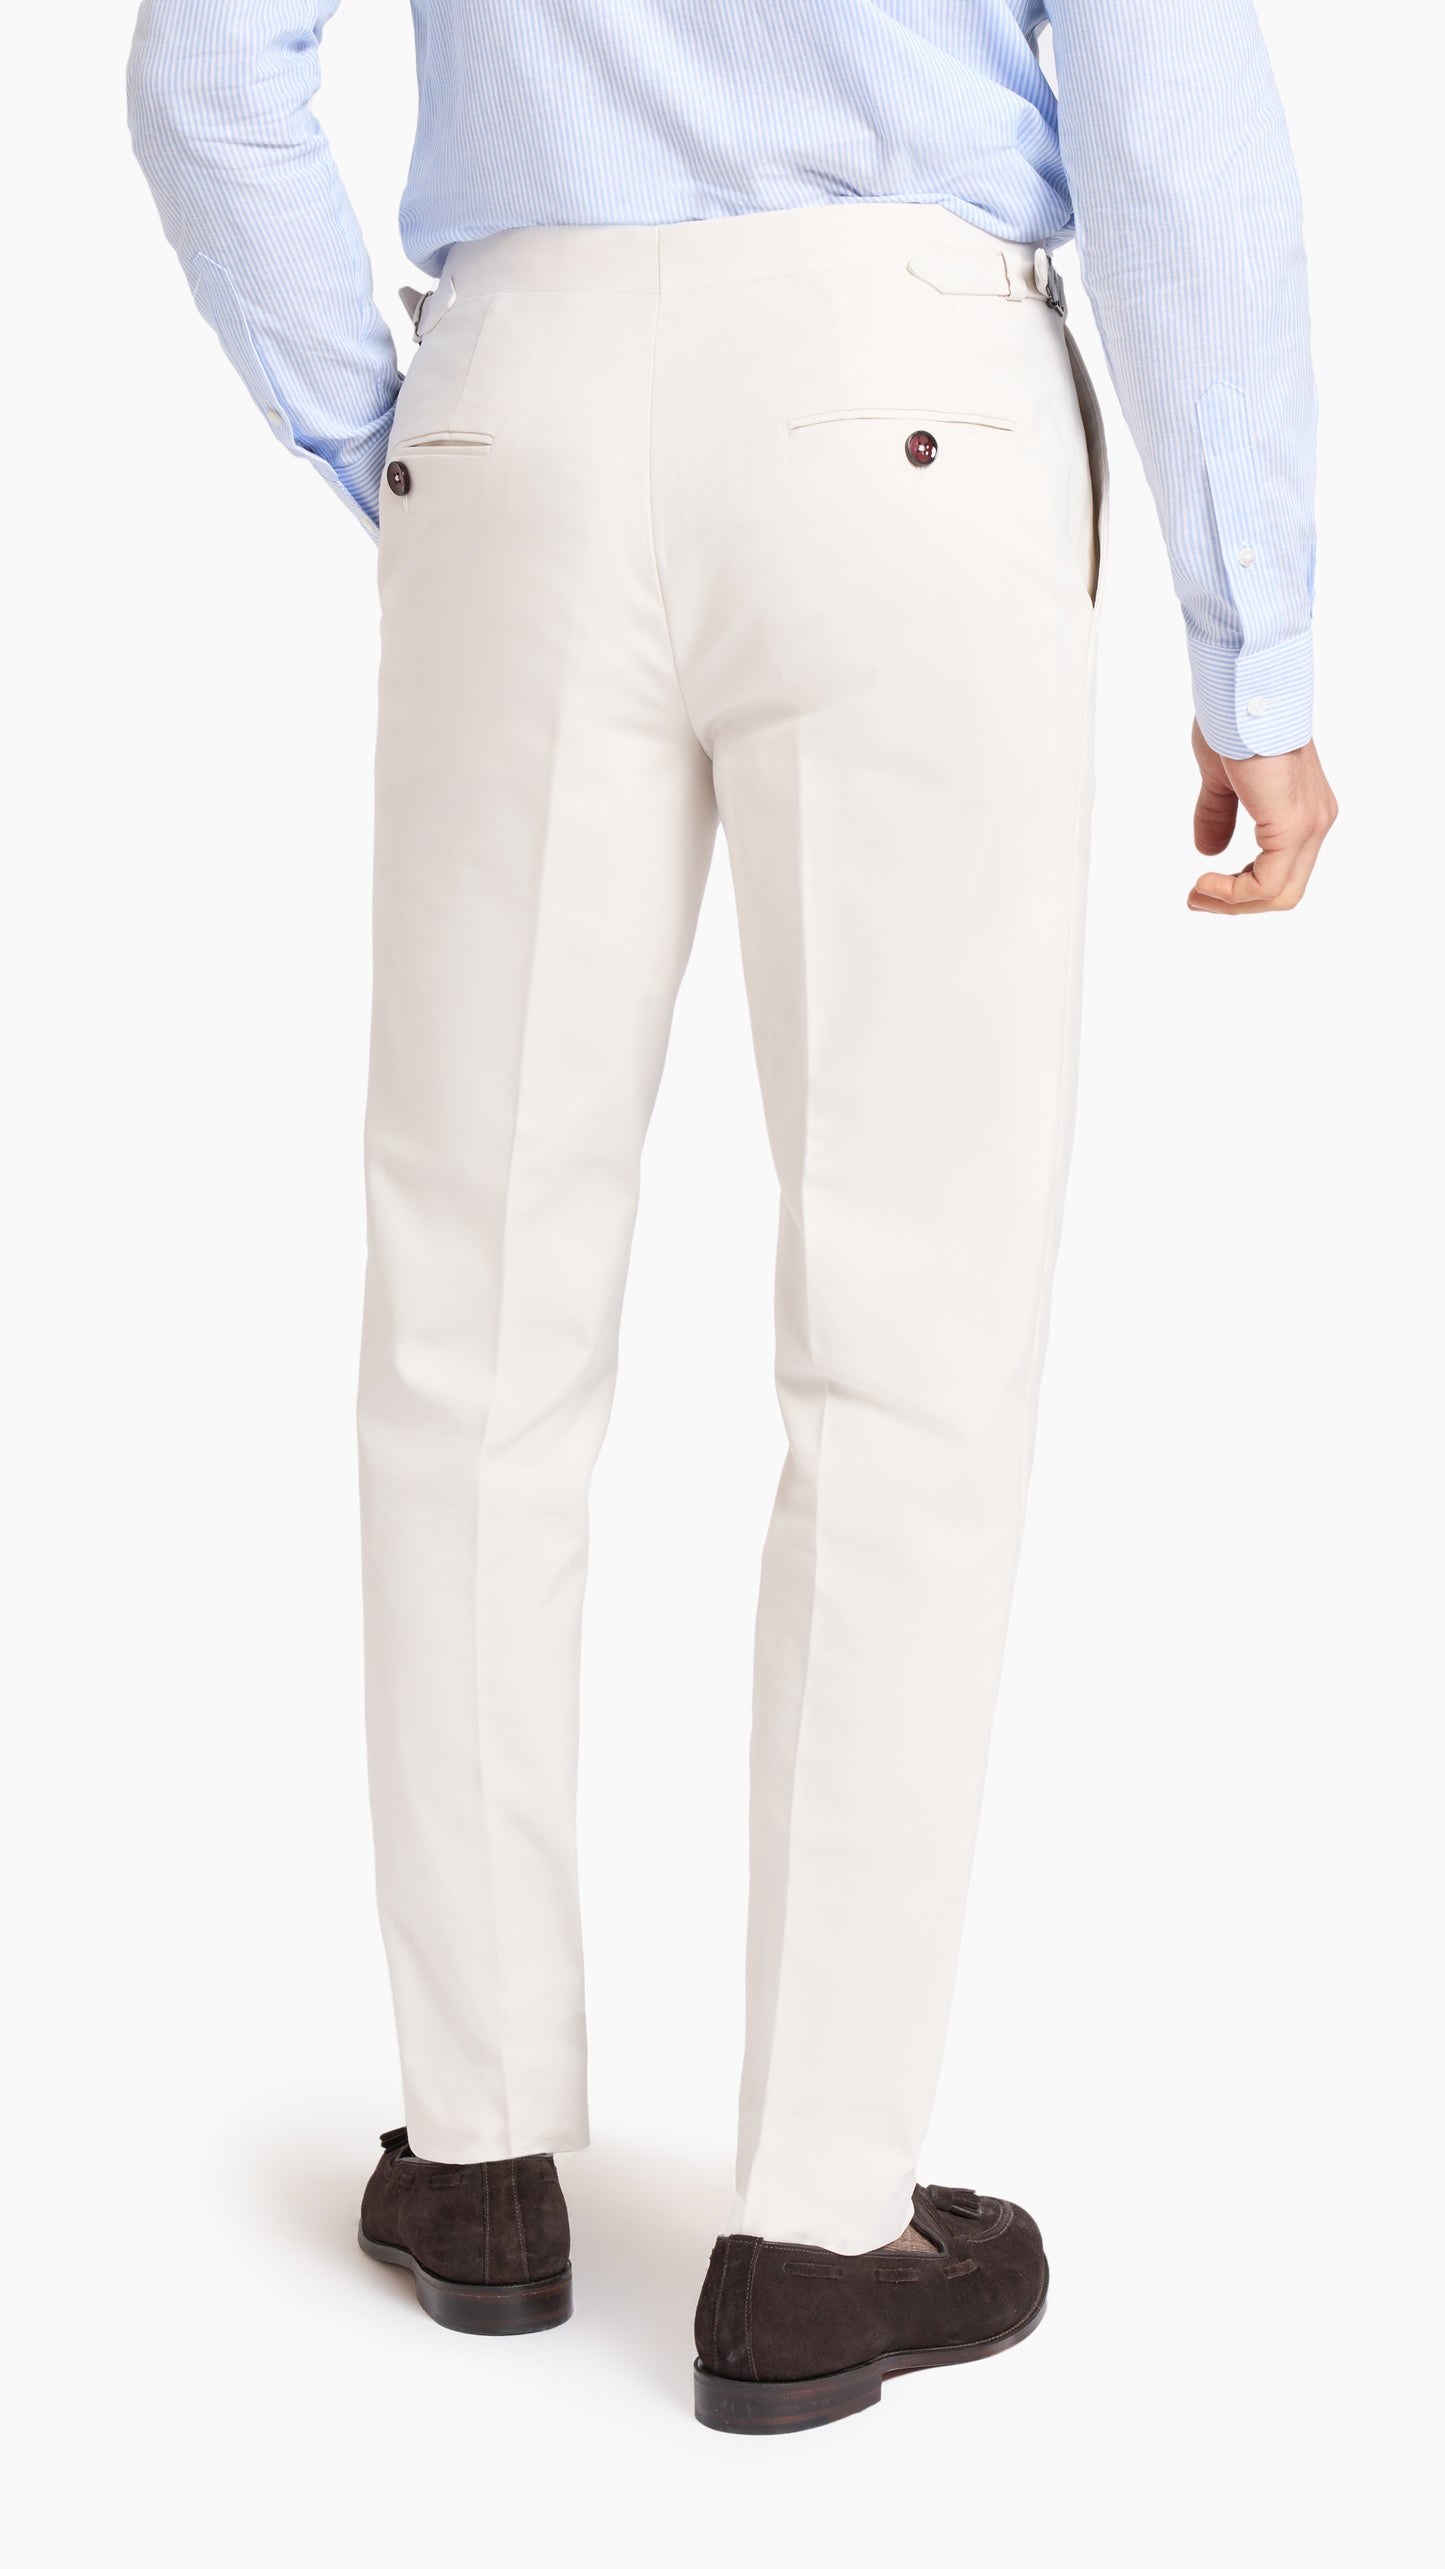 Loro Piana White Custom Suit